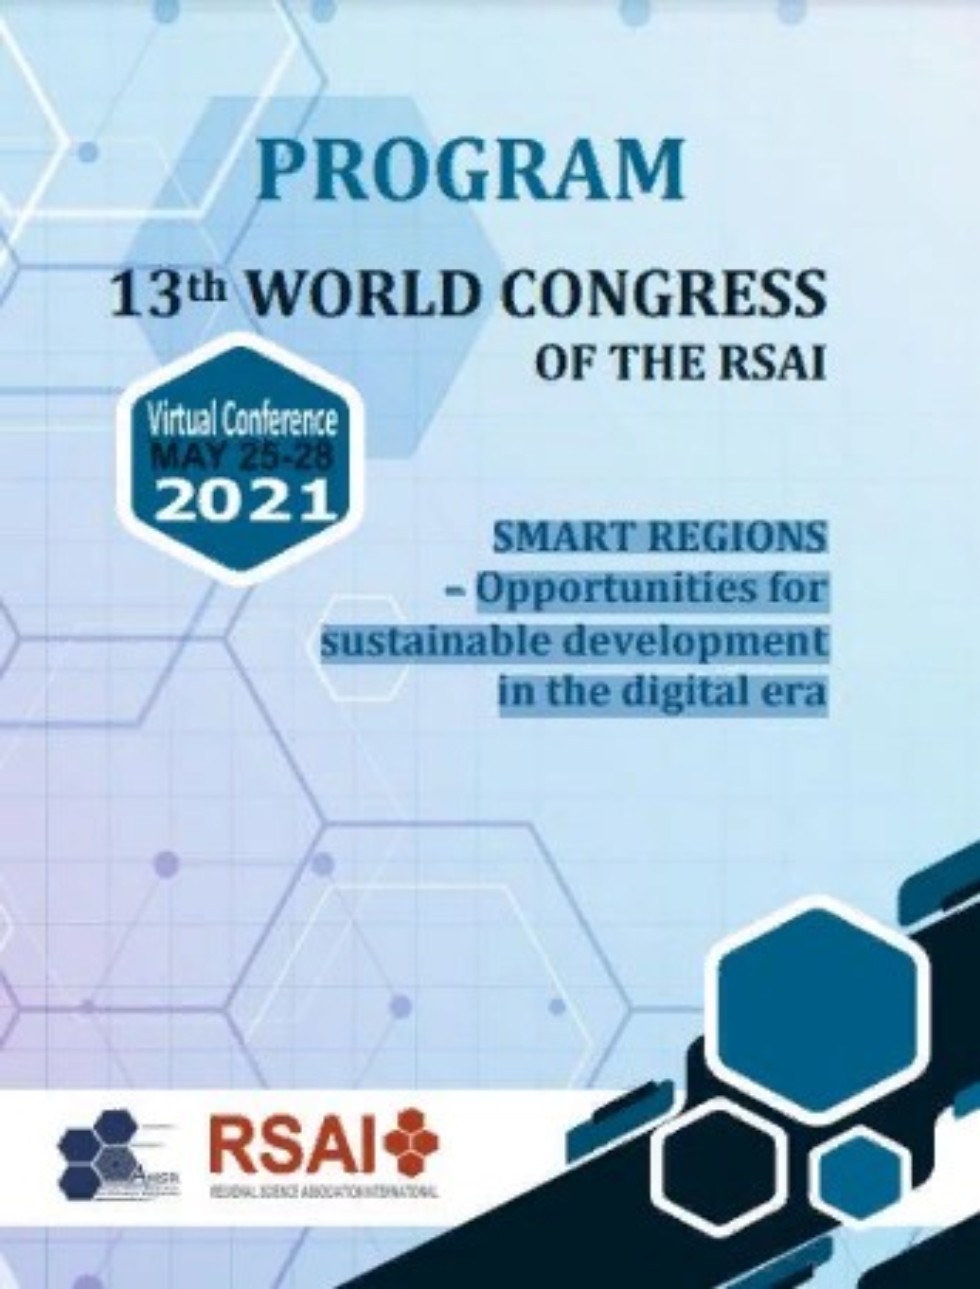 Представители кафедры выступили с научными докладами на таких знаковых научных мероприятиях как 13th WORLD CONGRESS OF THE RSAI: SMART REGIONS